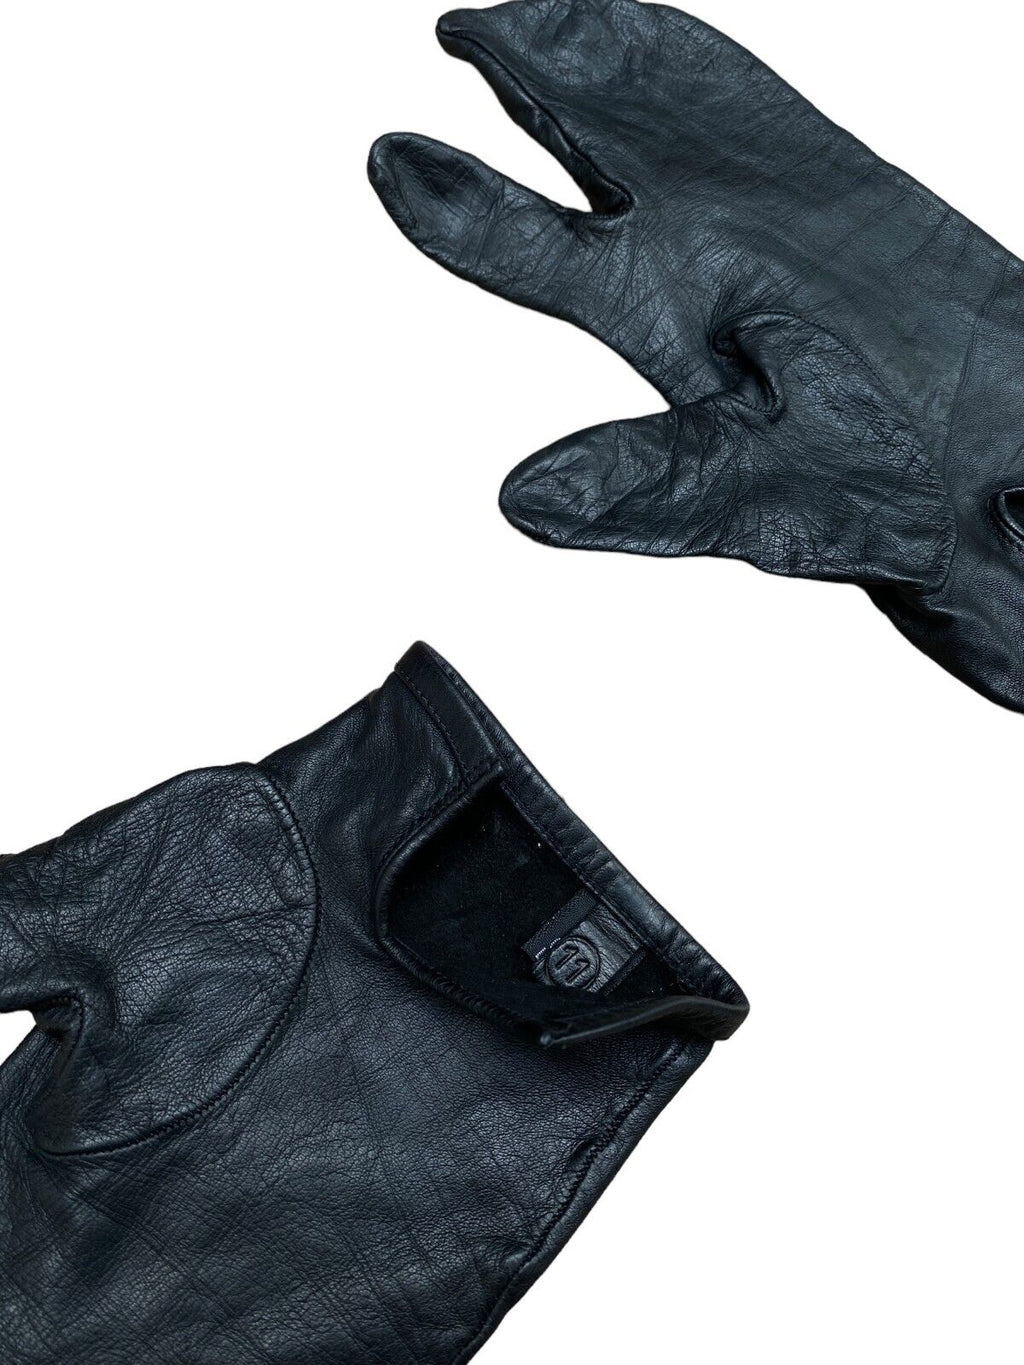 Vintage Black Leather Tabi Gloves Size 7,5 / Men S or Women M